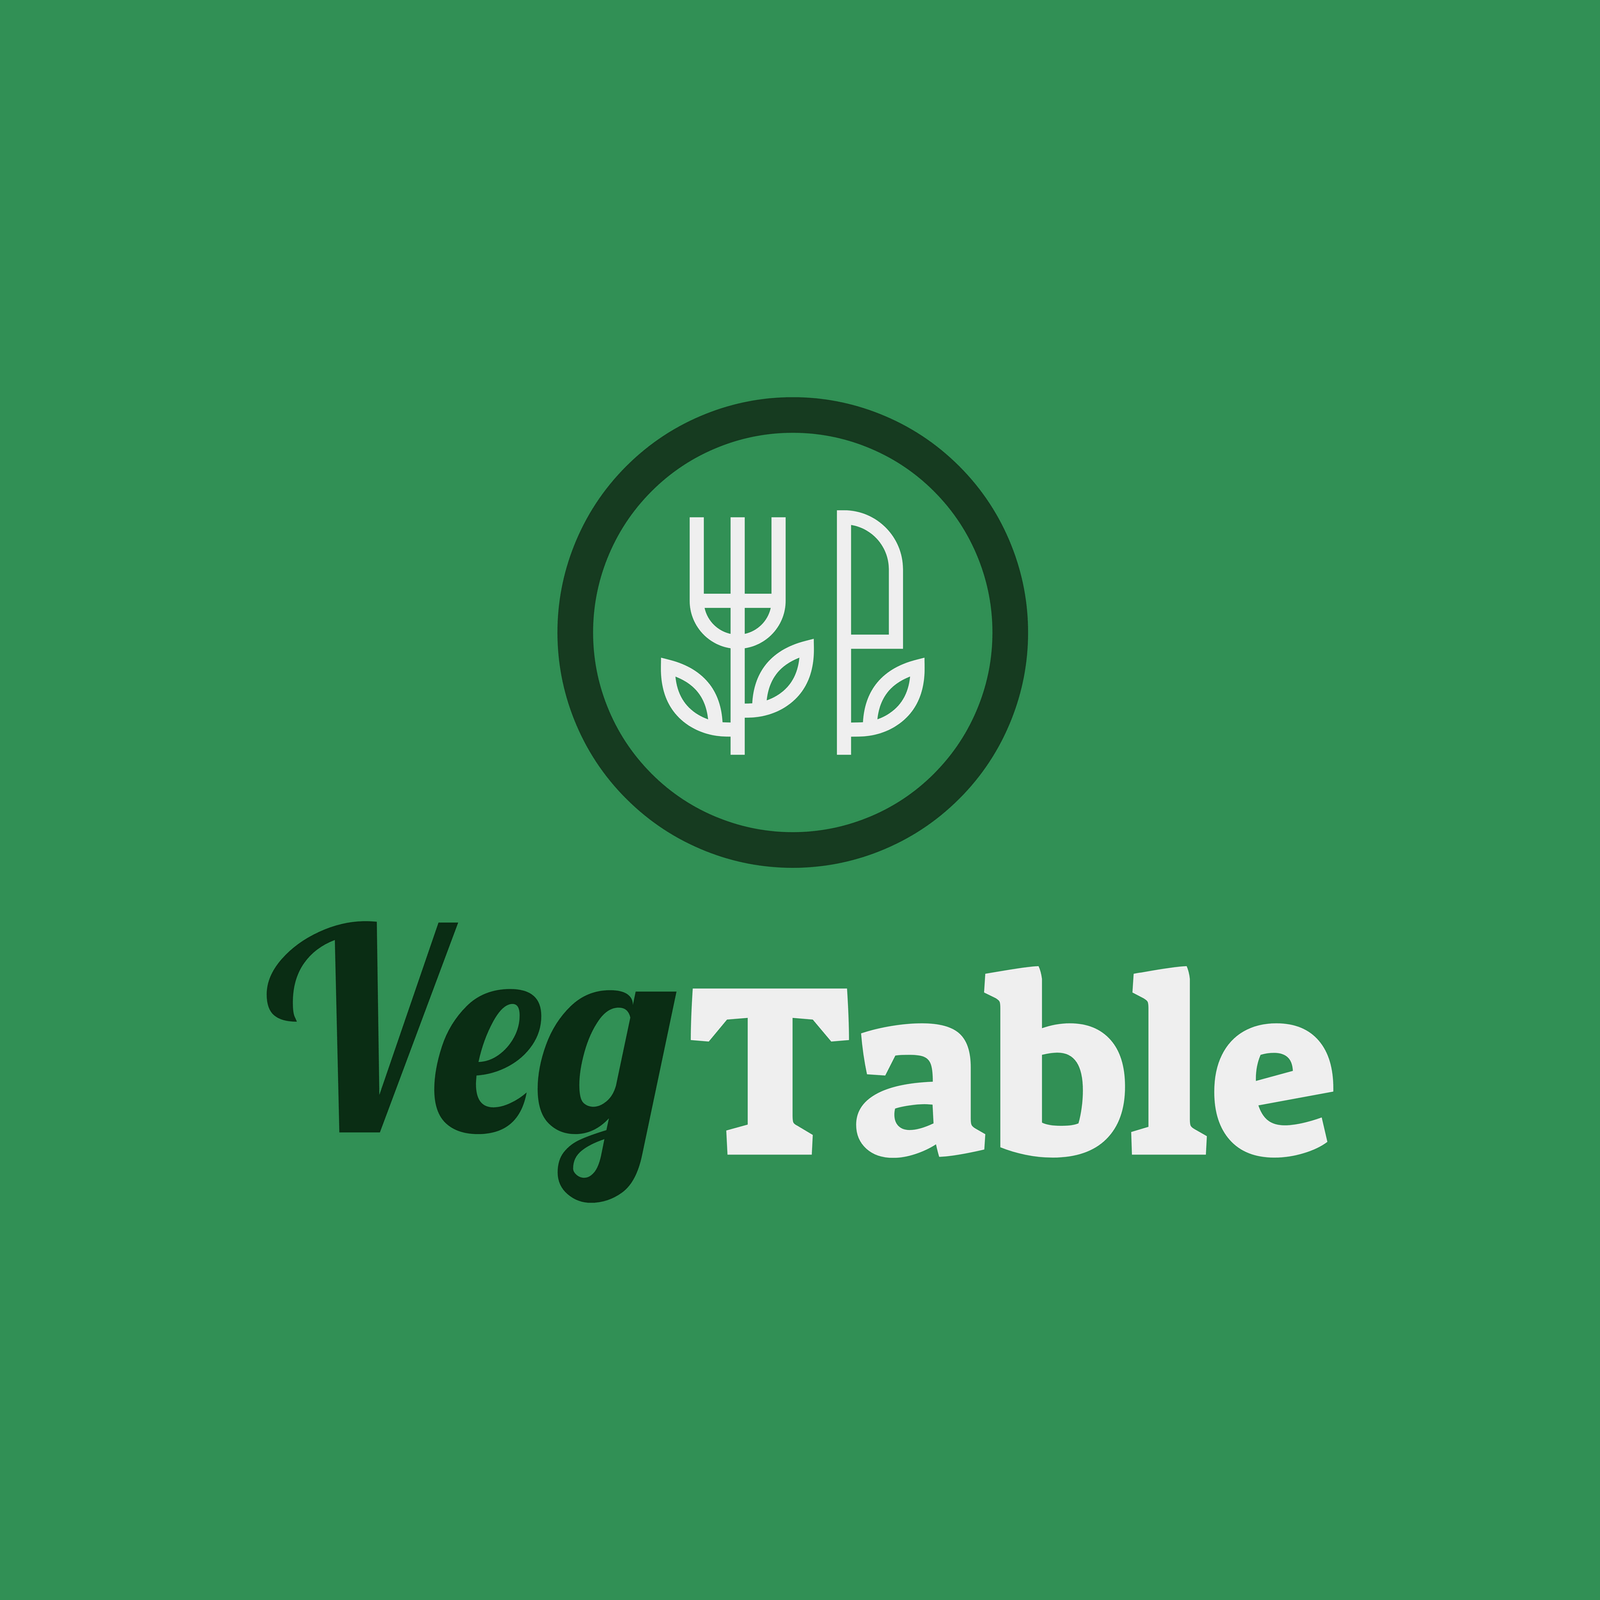 VegTable Client Logo